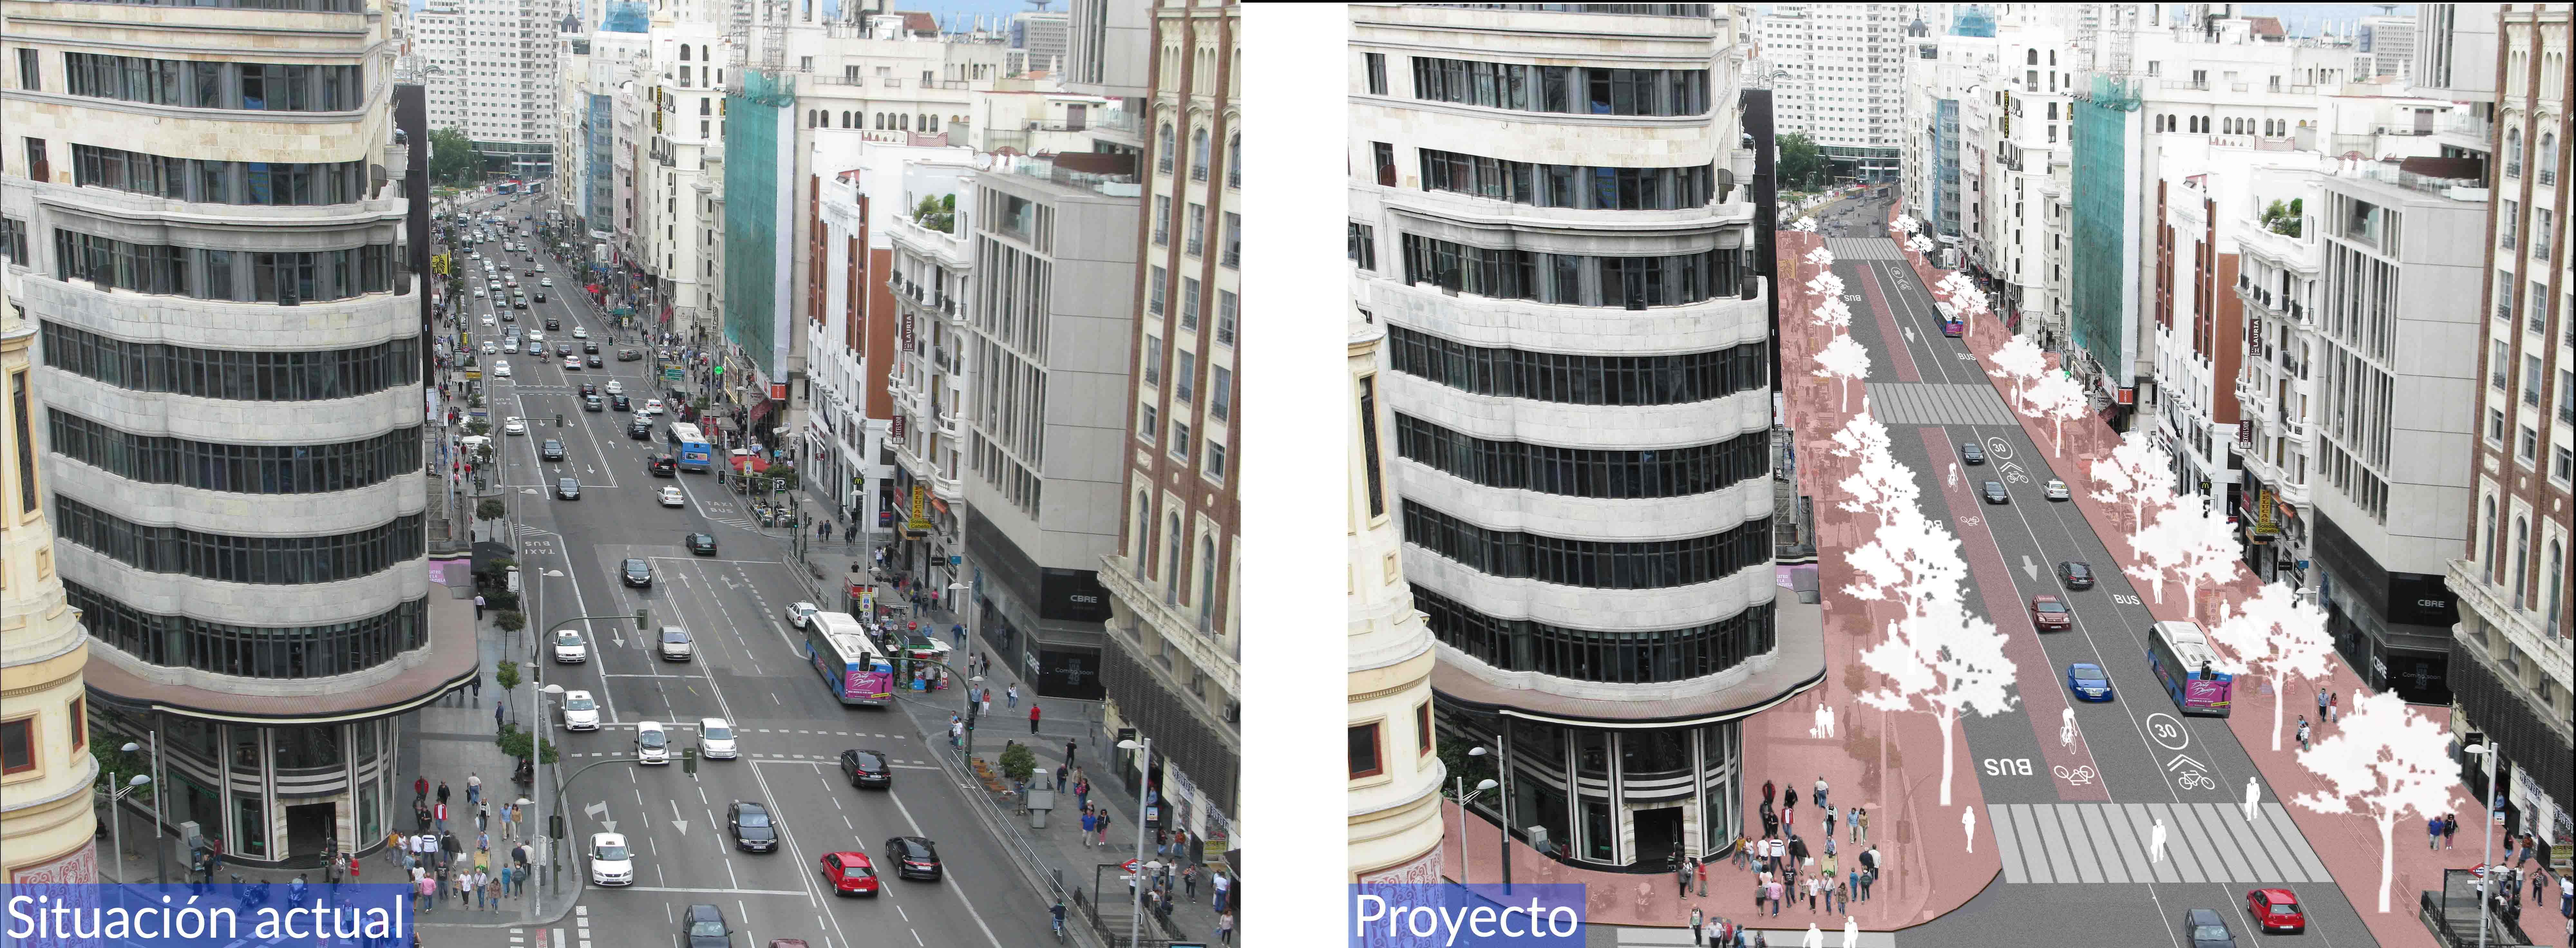 Estado actual y proyecto de remodelación de la Gran Vía de Madrid